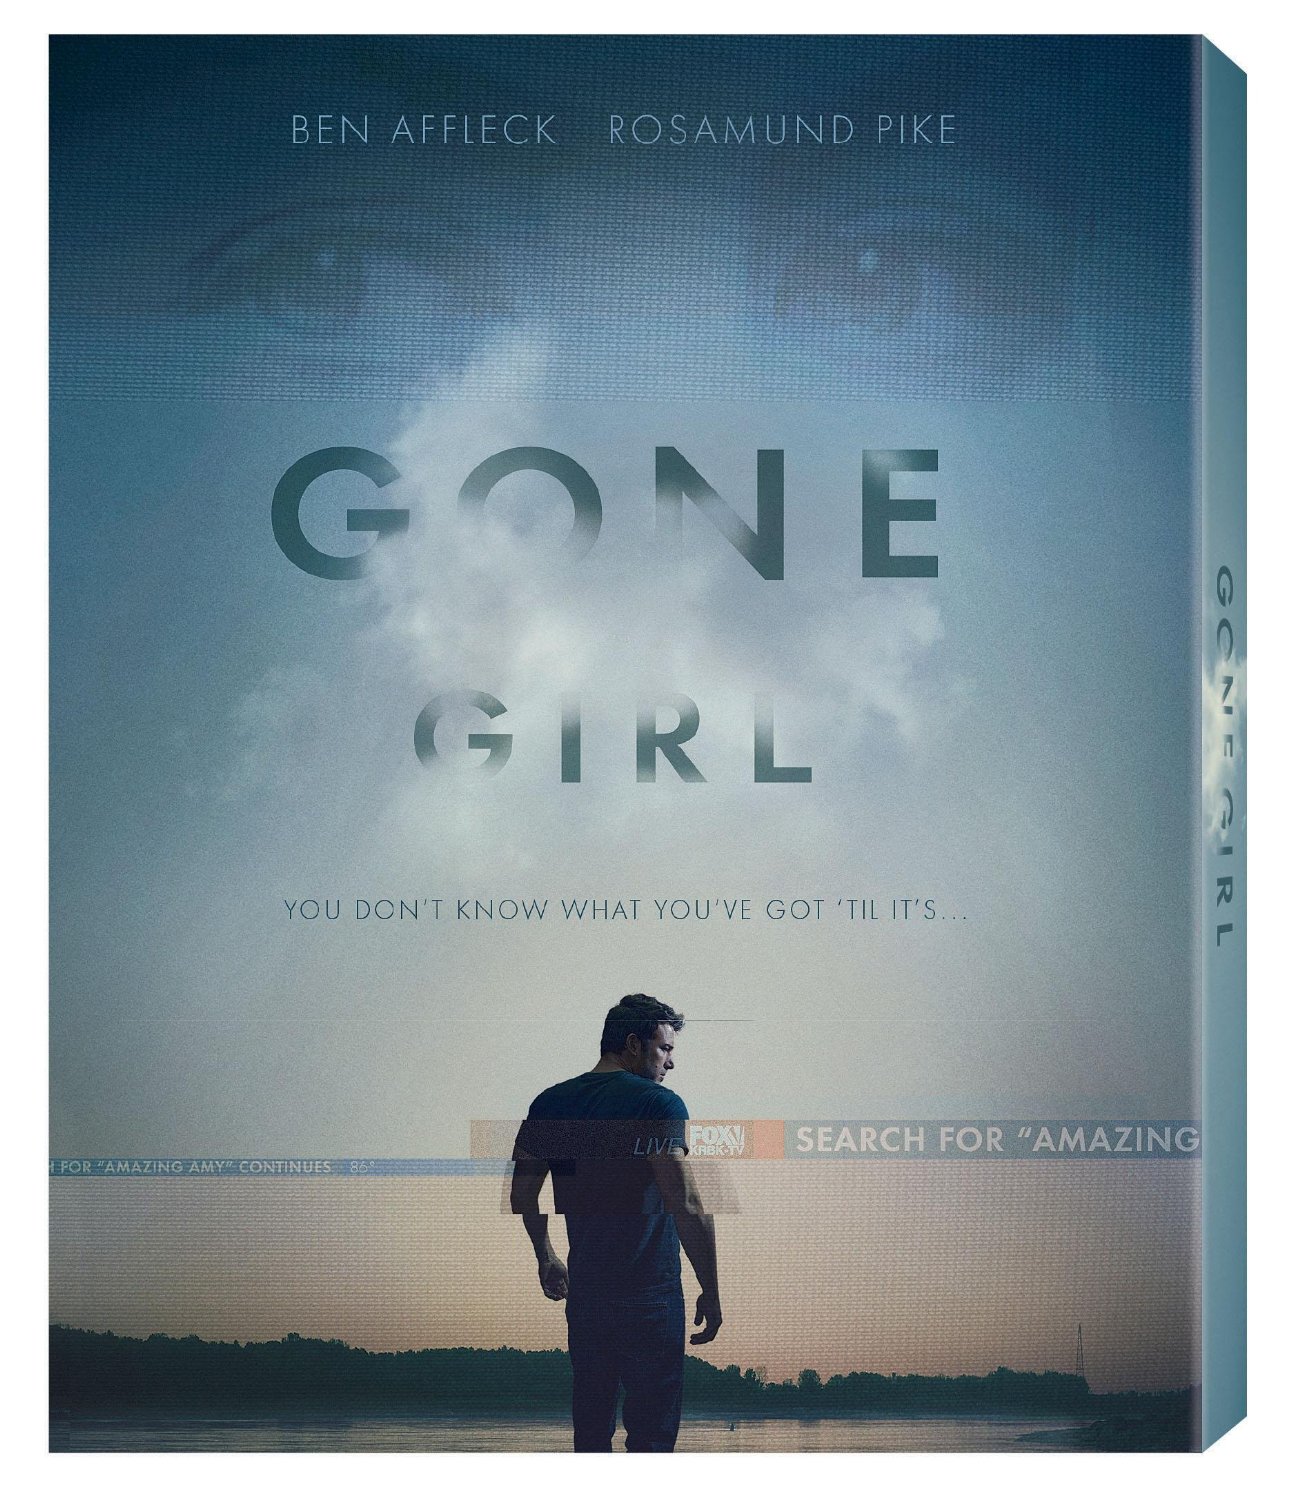 DVD reviews: Gone Girl